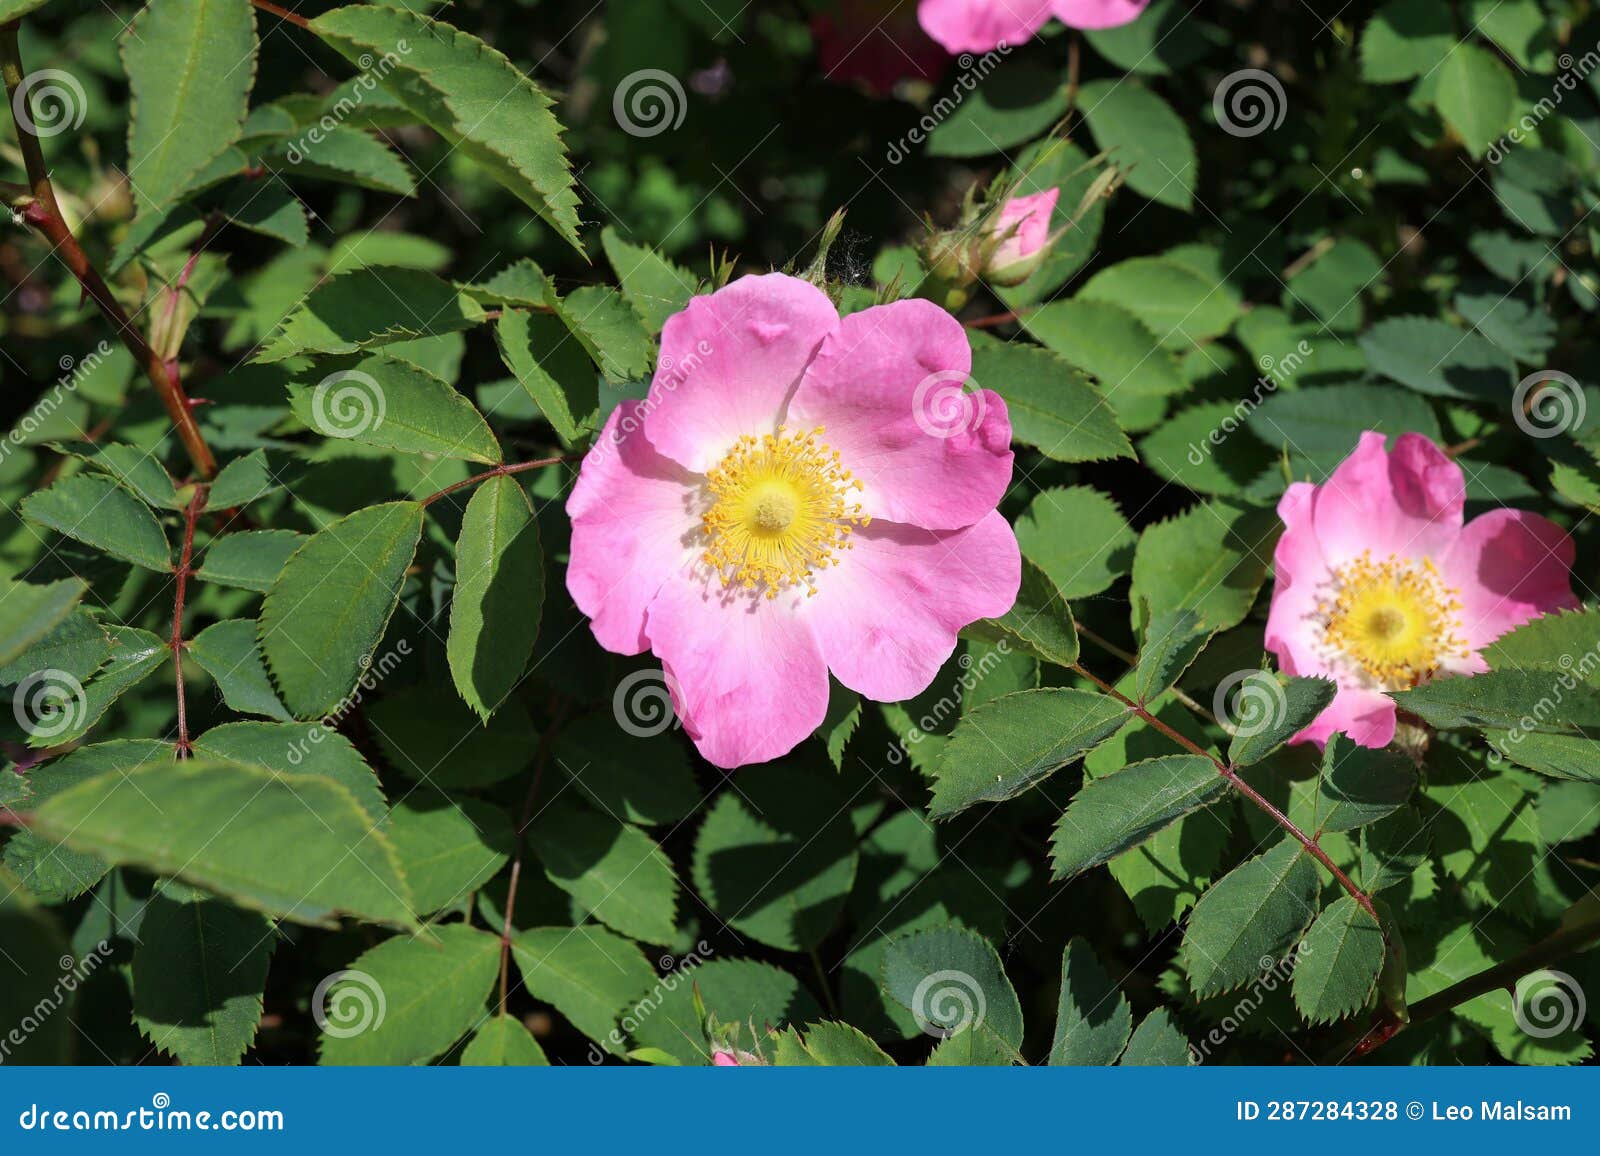 blooming wild rose hips. flowering in vivo